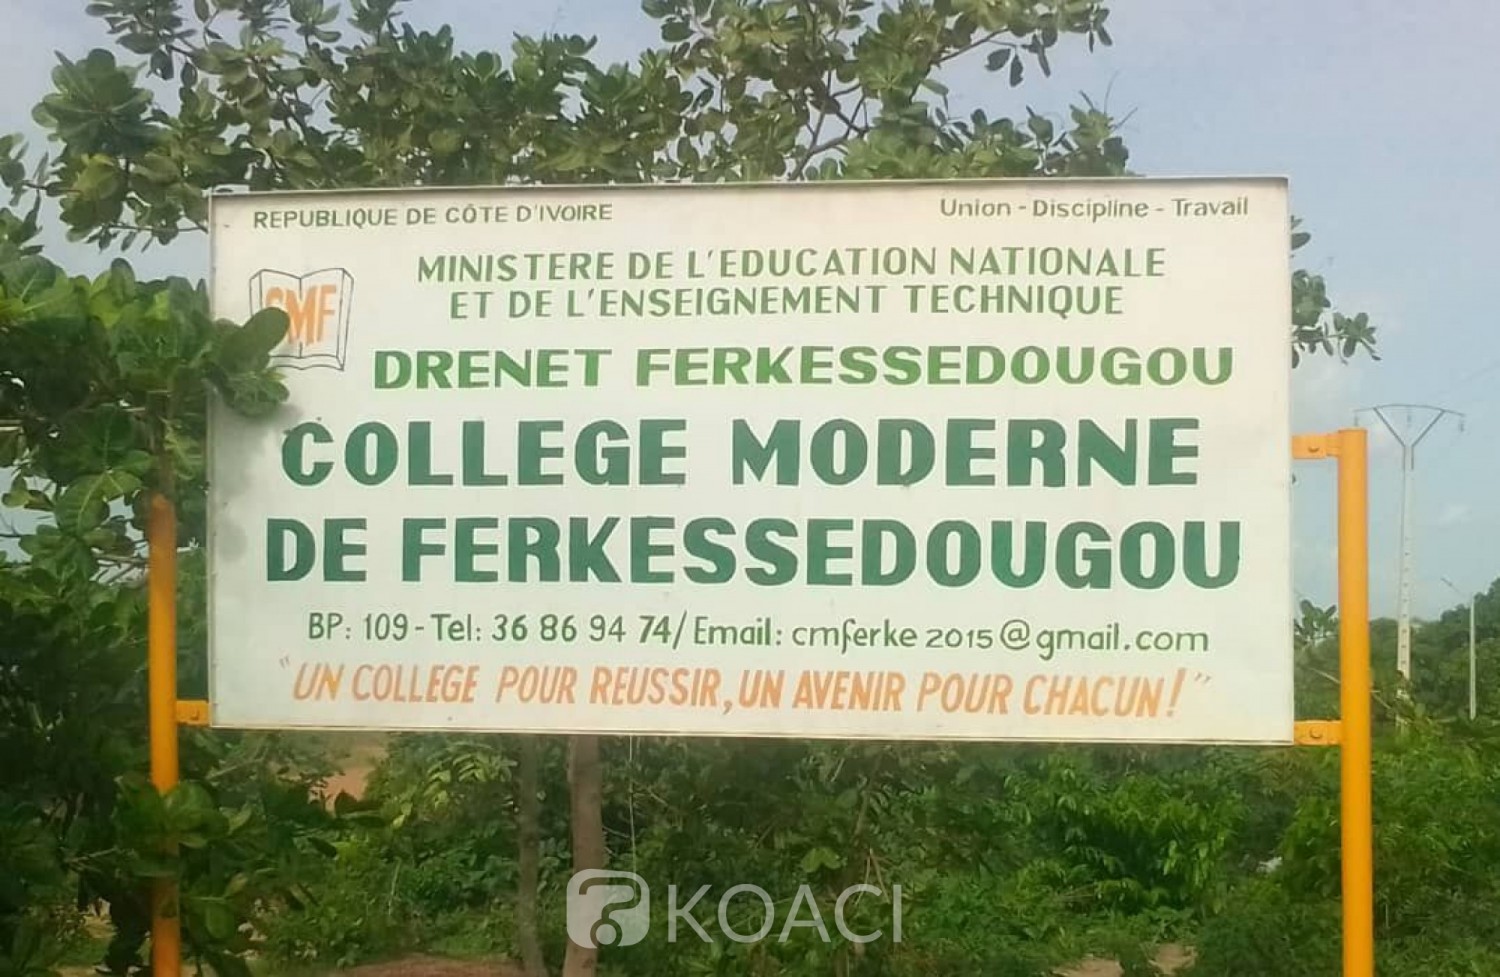 Côte d'Ivoire : Ferké, habitant illégalement au Collège, un homme menace de faire disparaitre l'établissement s'il est contraint de partir